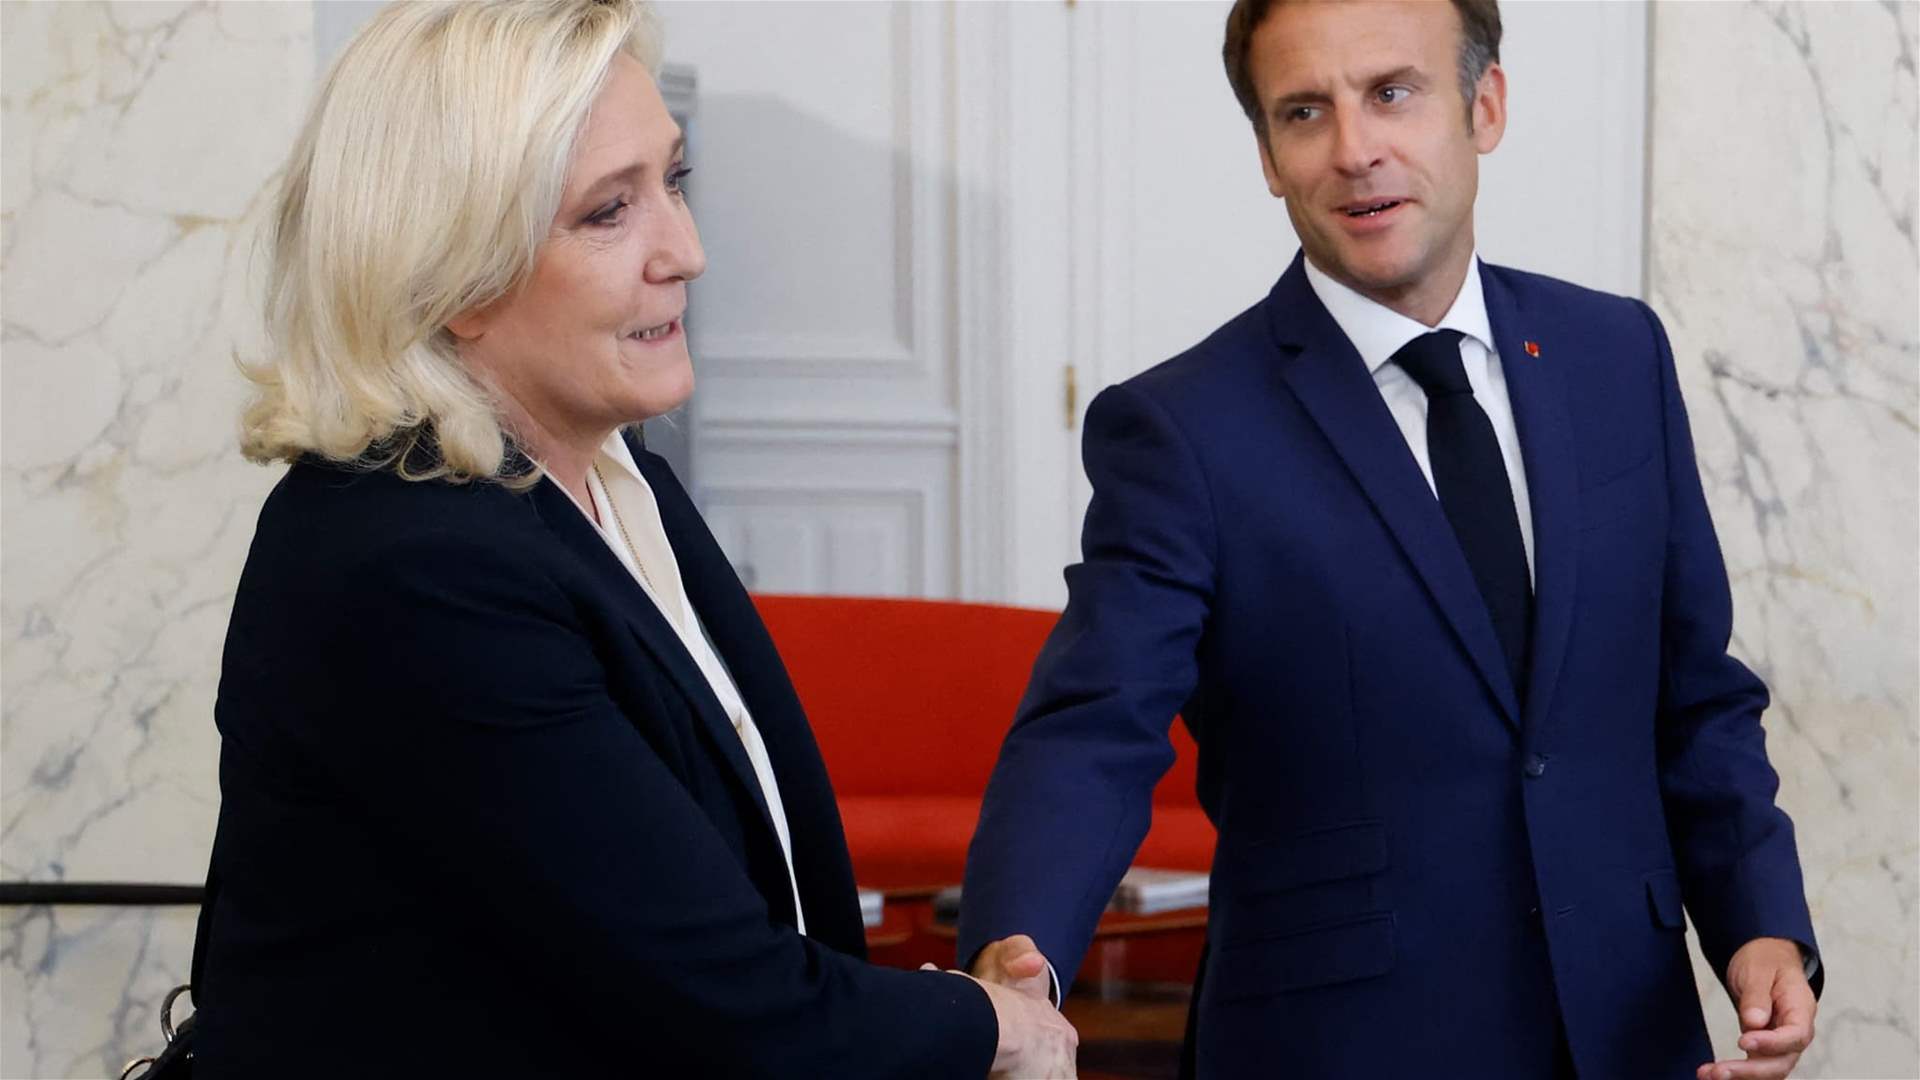 Le Pen blames Macron for government gridlock